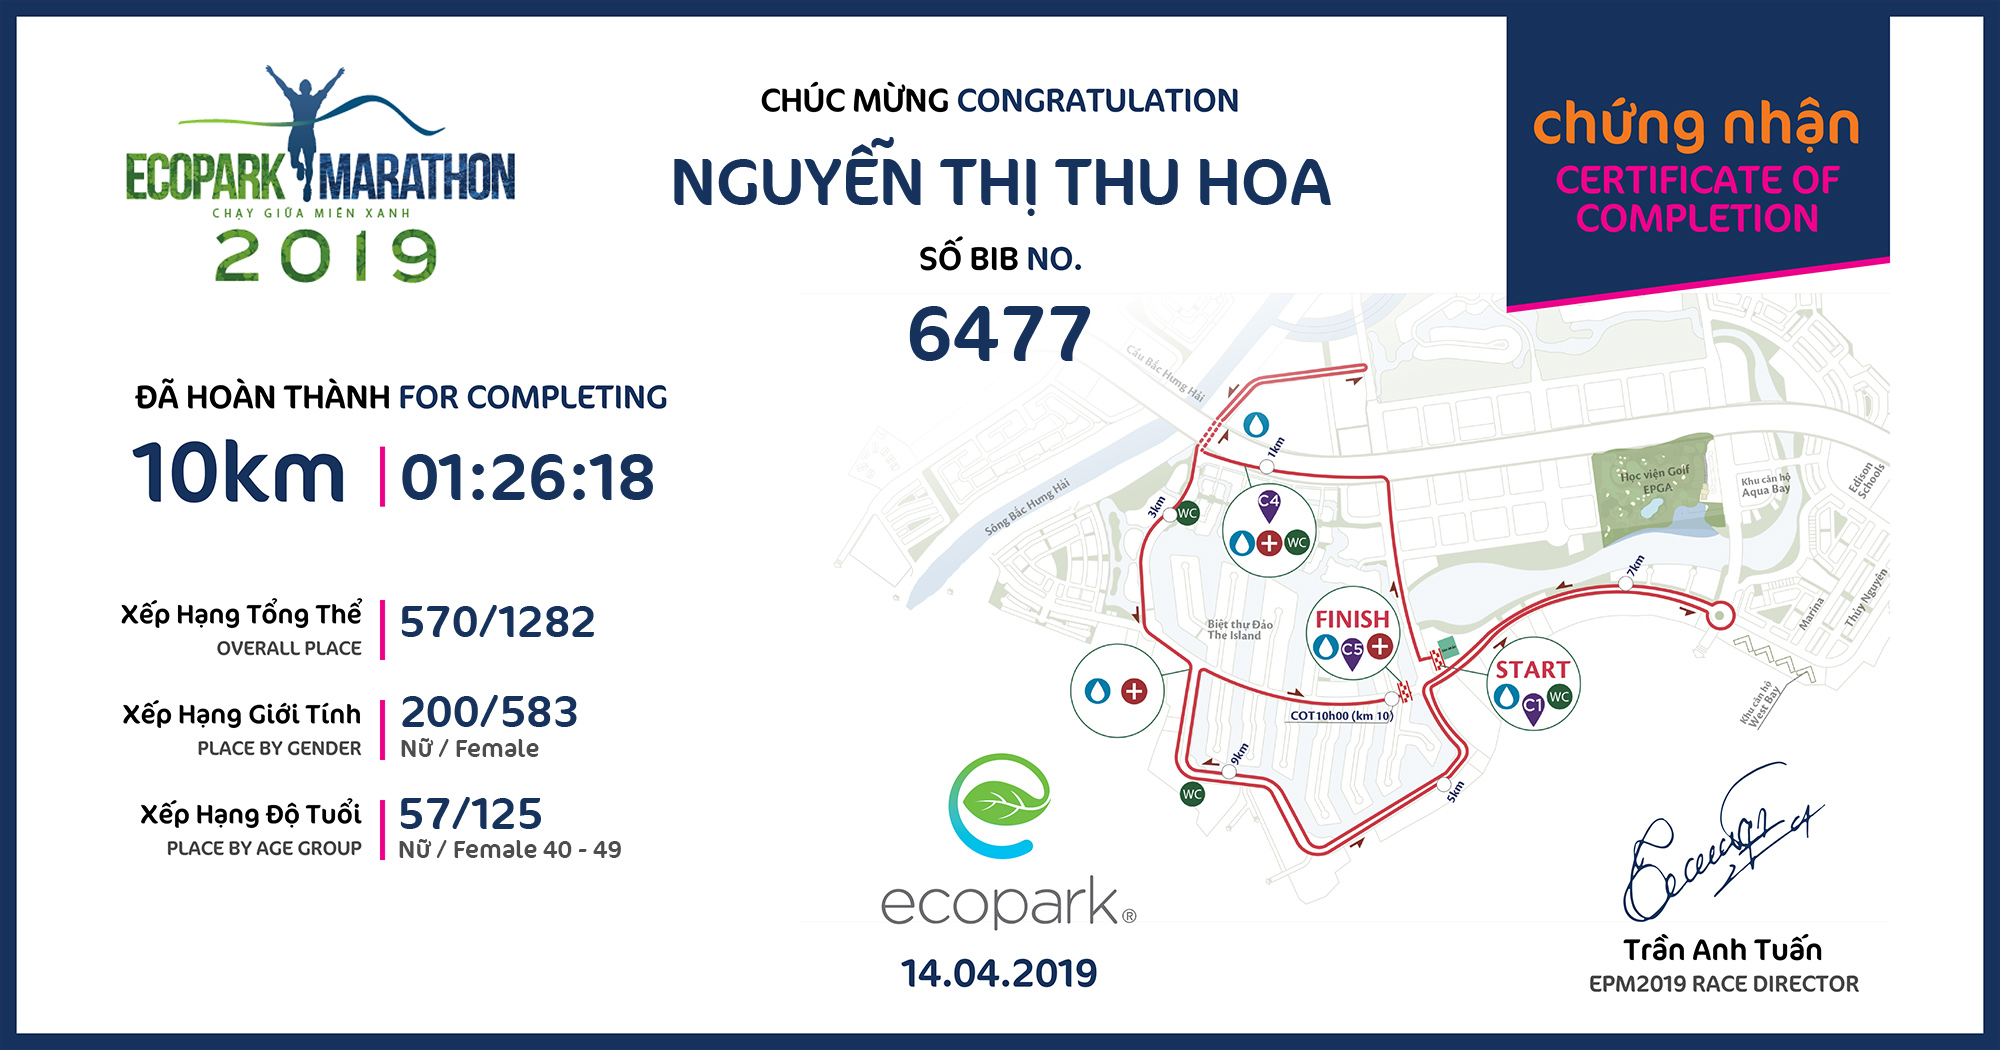 6477 - Nguyễn Thị Thu Hoa